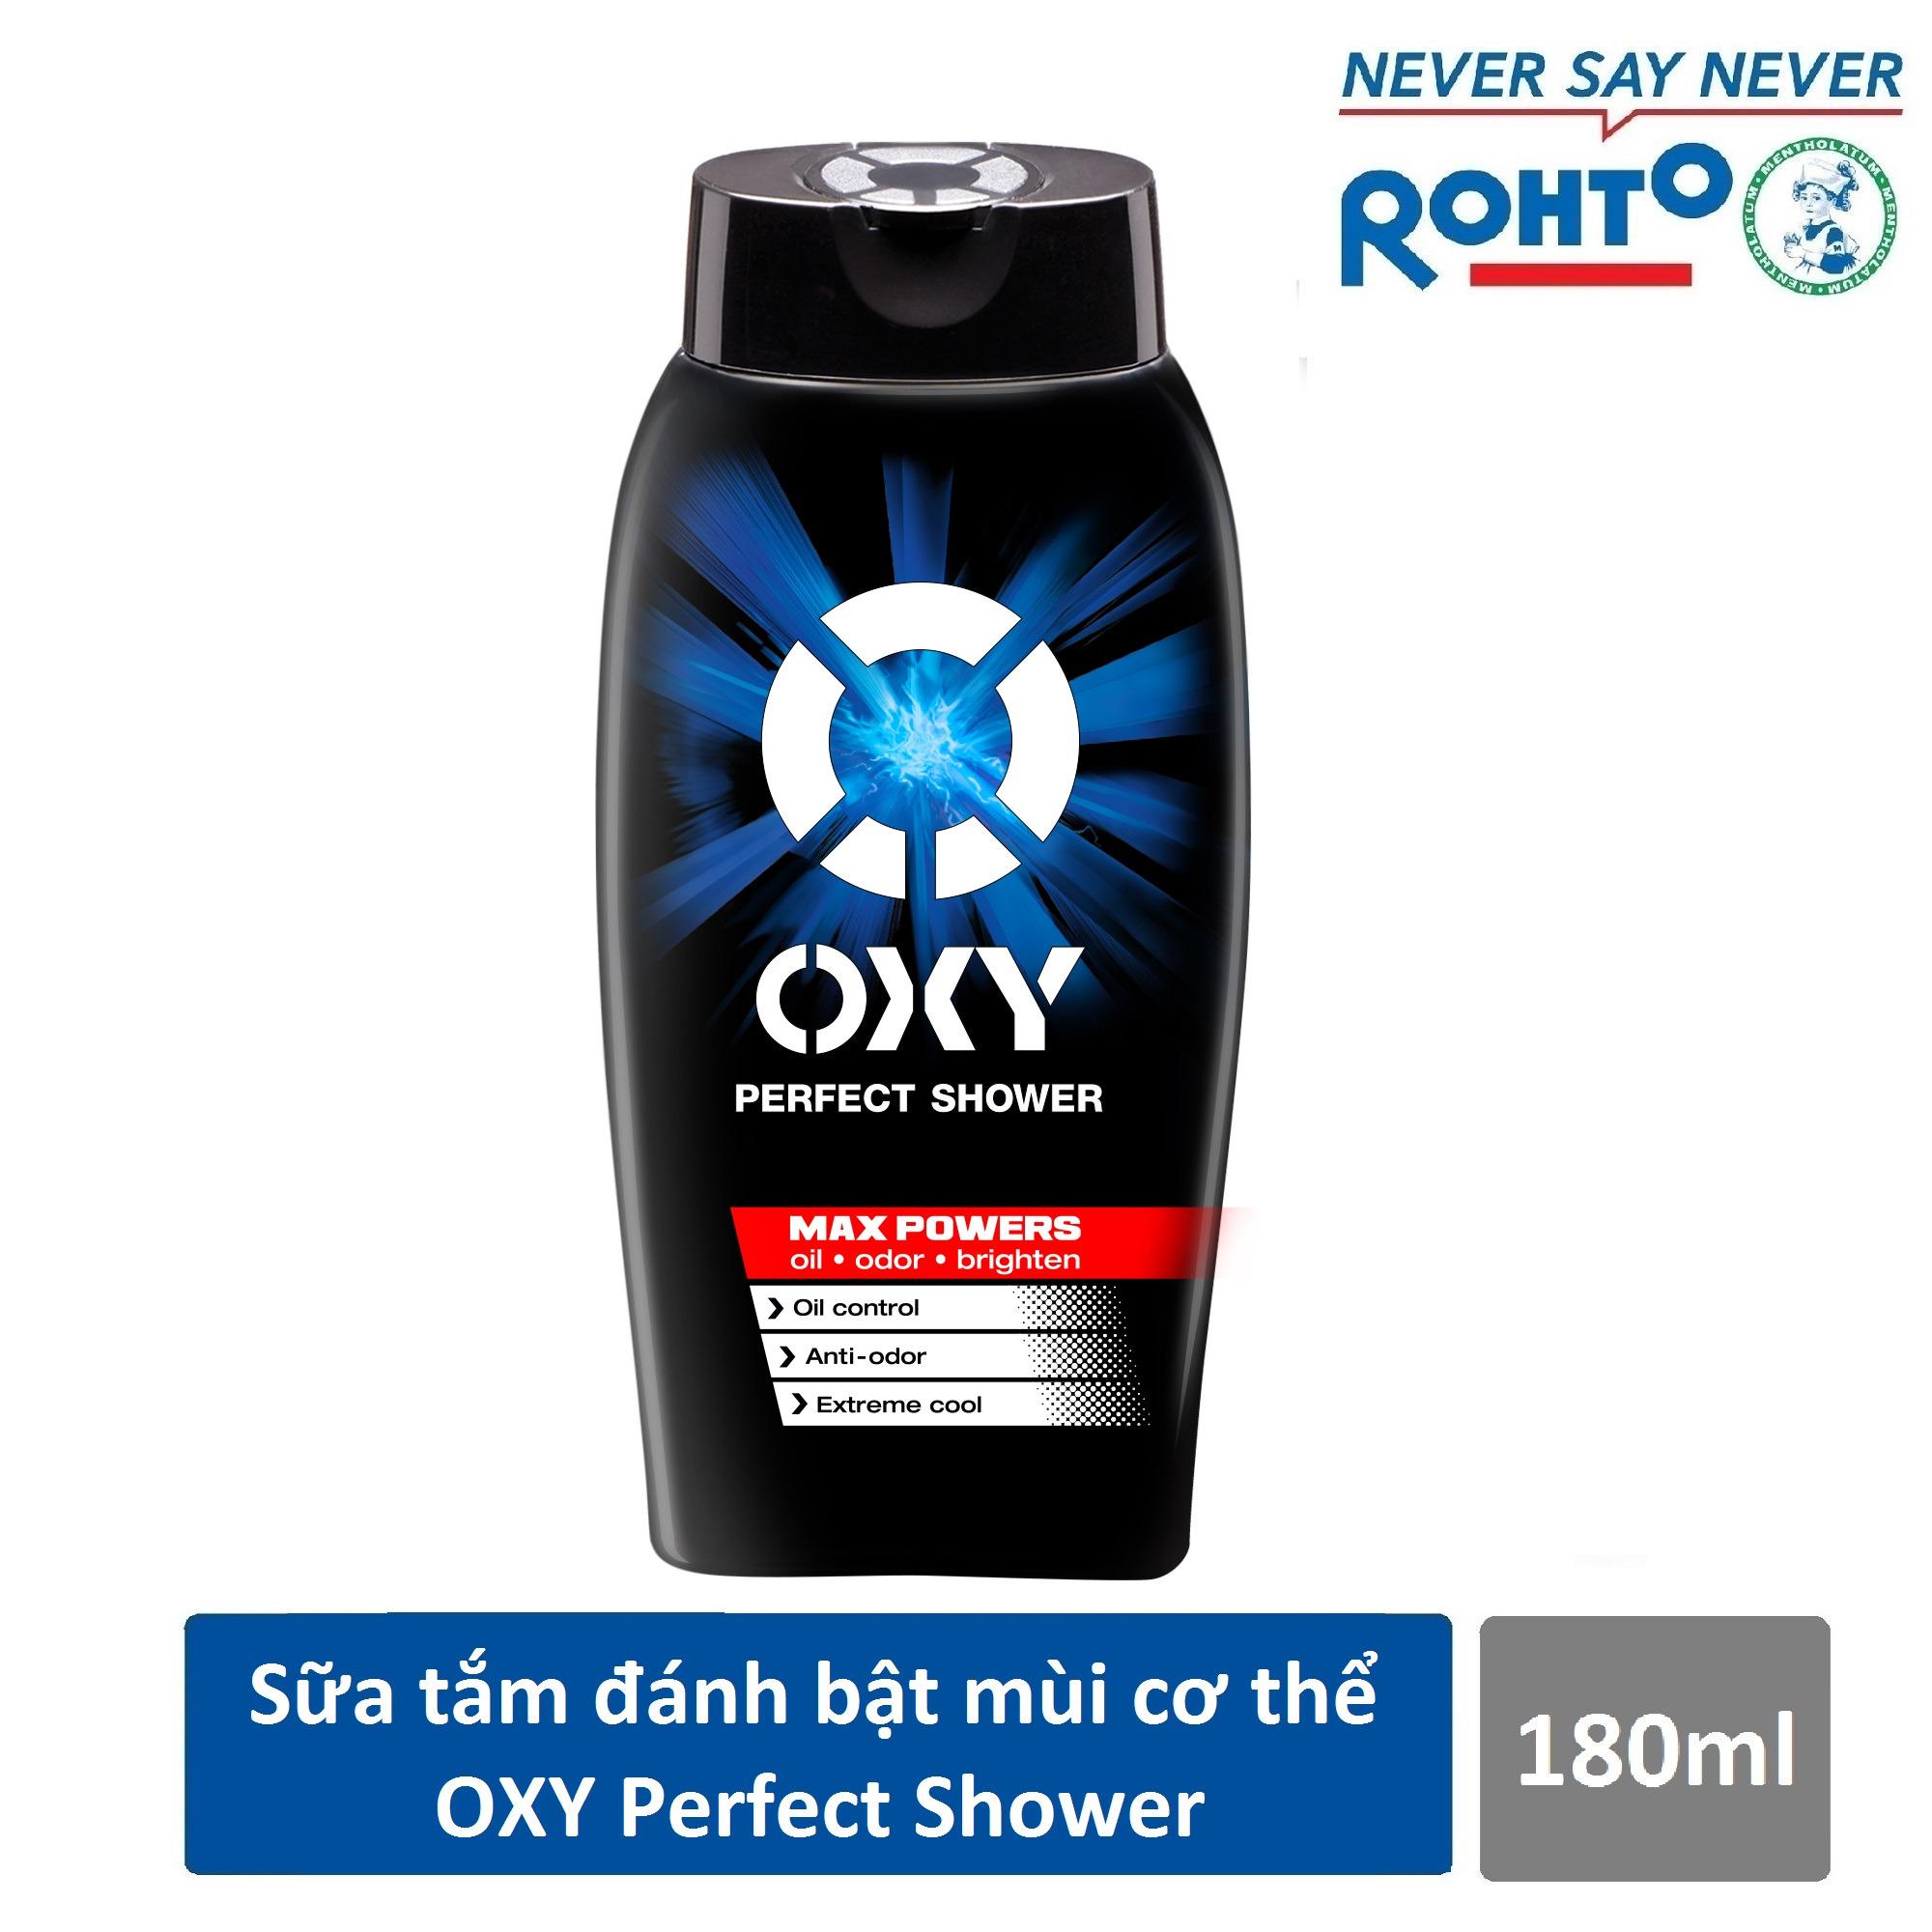 Sữa tắm đánh bật nhờn mùi cơ thể cho nam Oxy Perfect Shower 180ml - CƠ HỘI TRÚNG IPHONE X